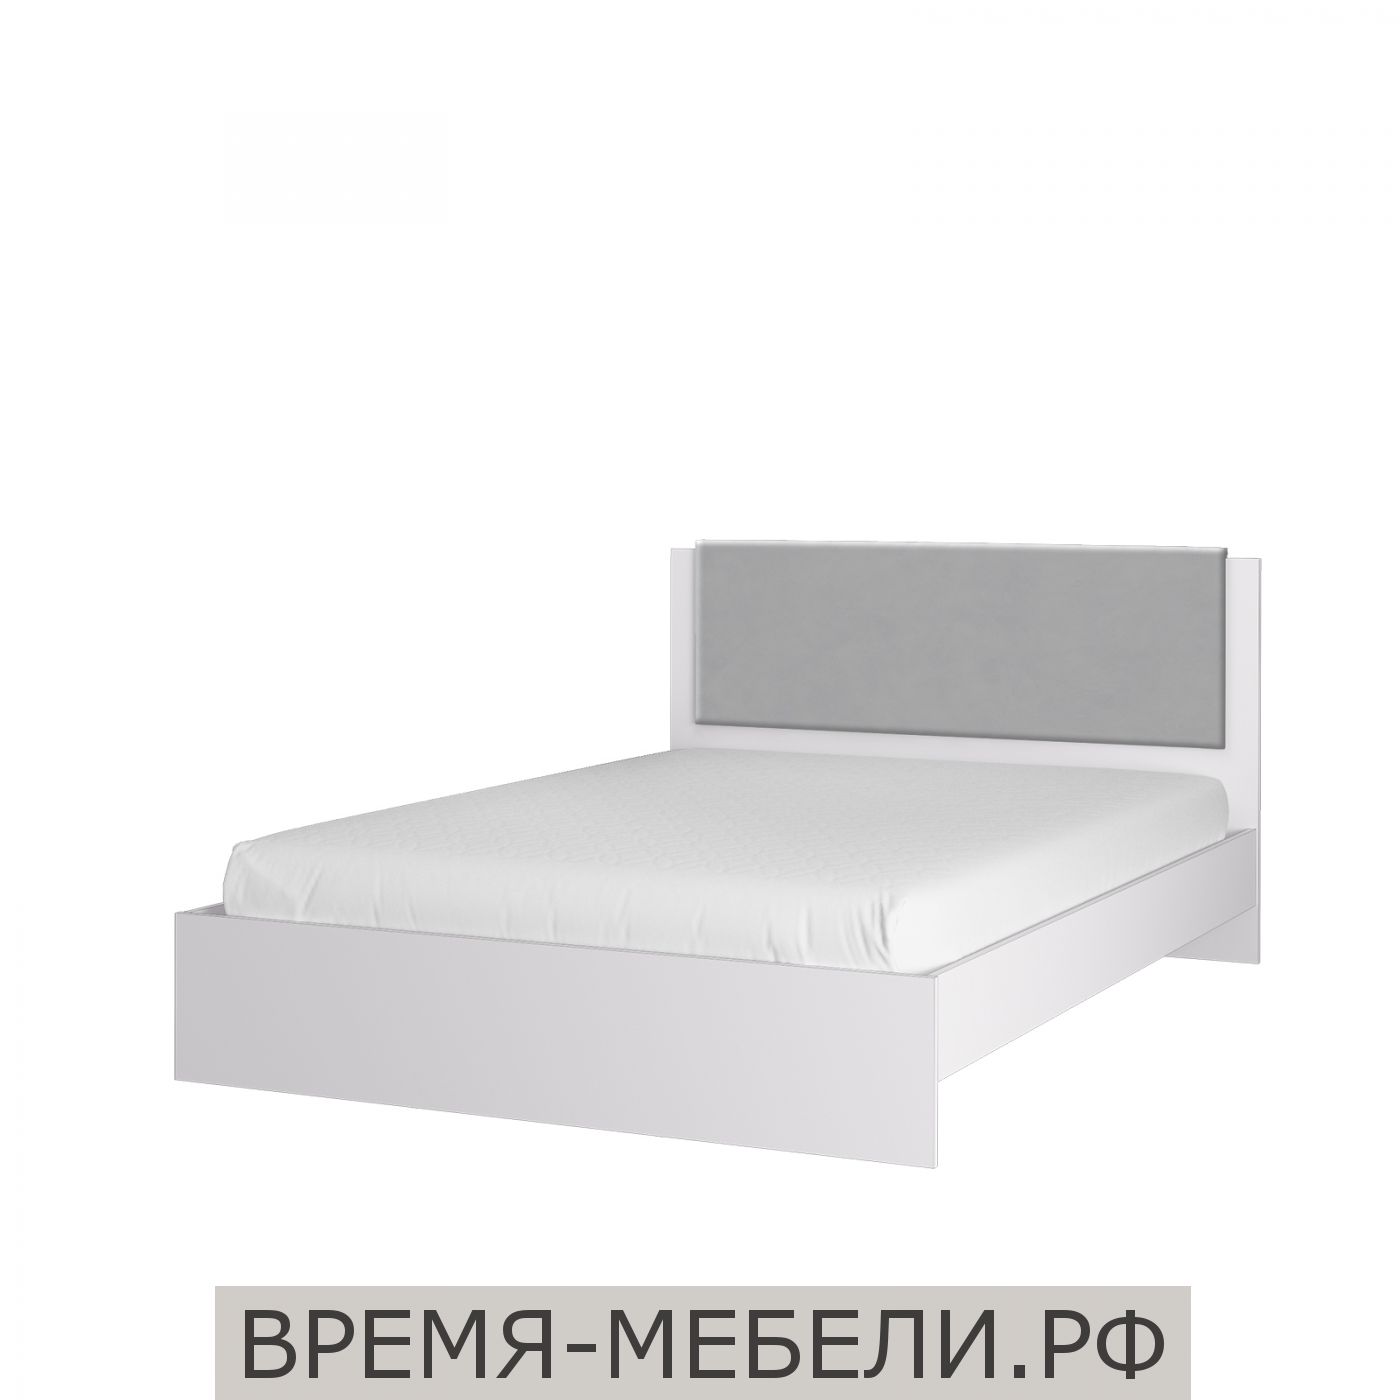 Акцент 16 М кровать - 15%